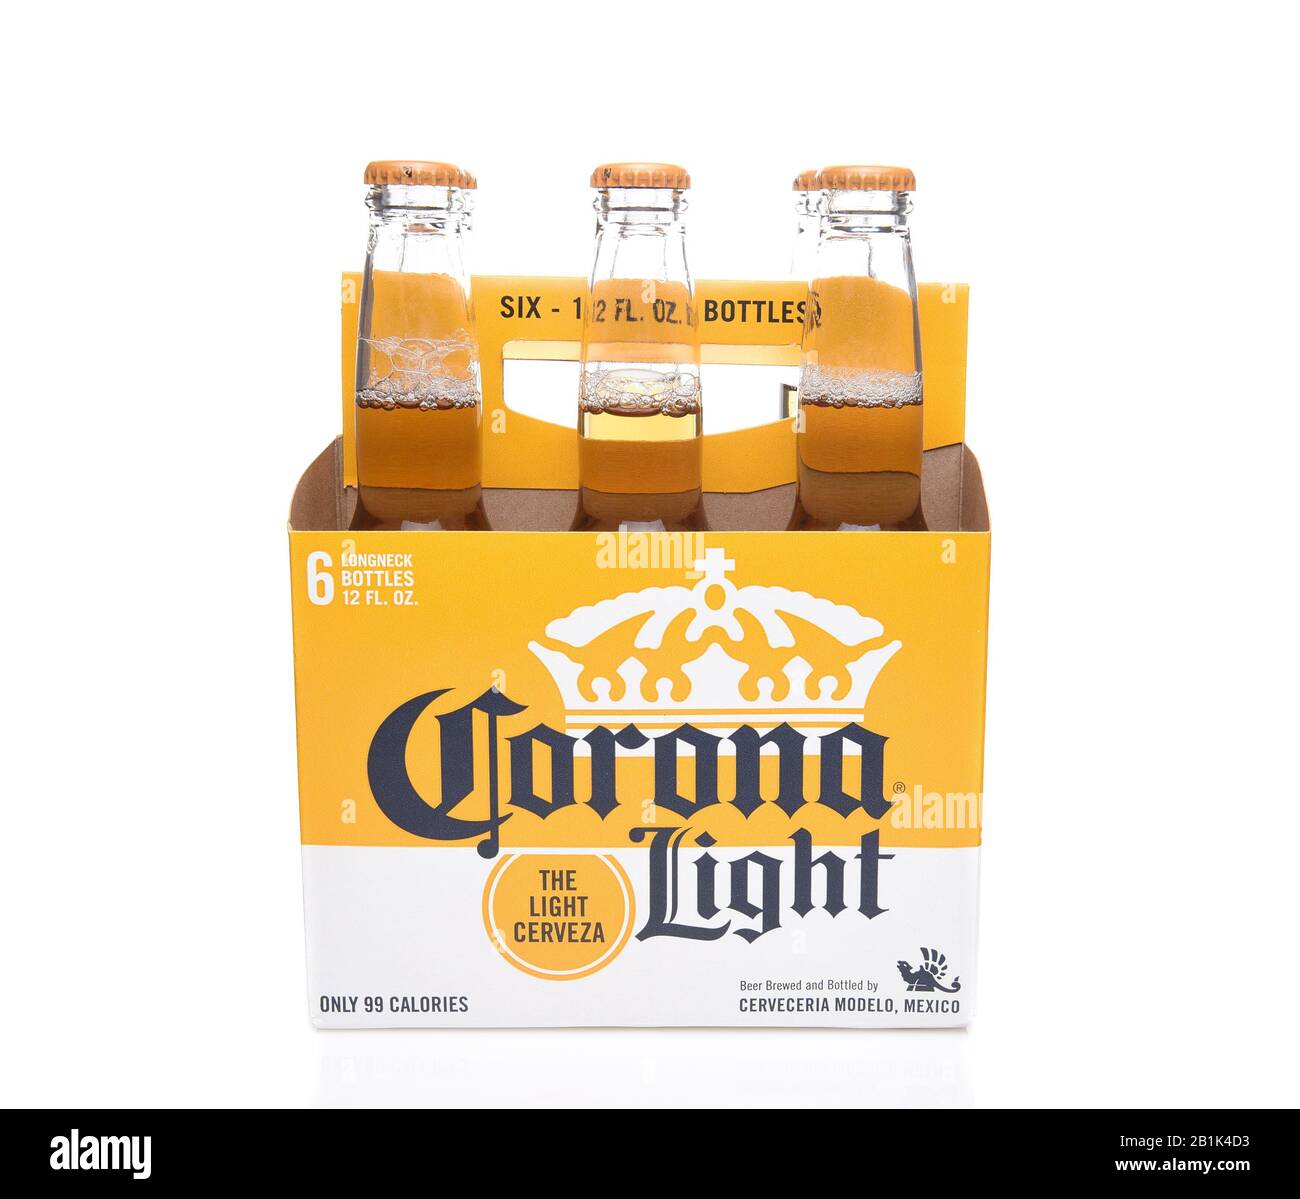 Irvine, CALIFORNIA - 14 DICEMBRE 2017: Confezione da 6 bottiglie di birra Corona Light. Corona è la birra importata più popolare negli Stati Uniti. Foto Stock